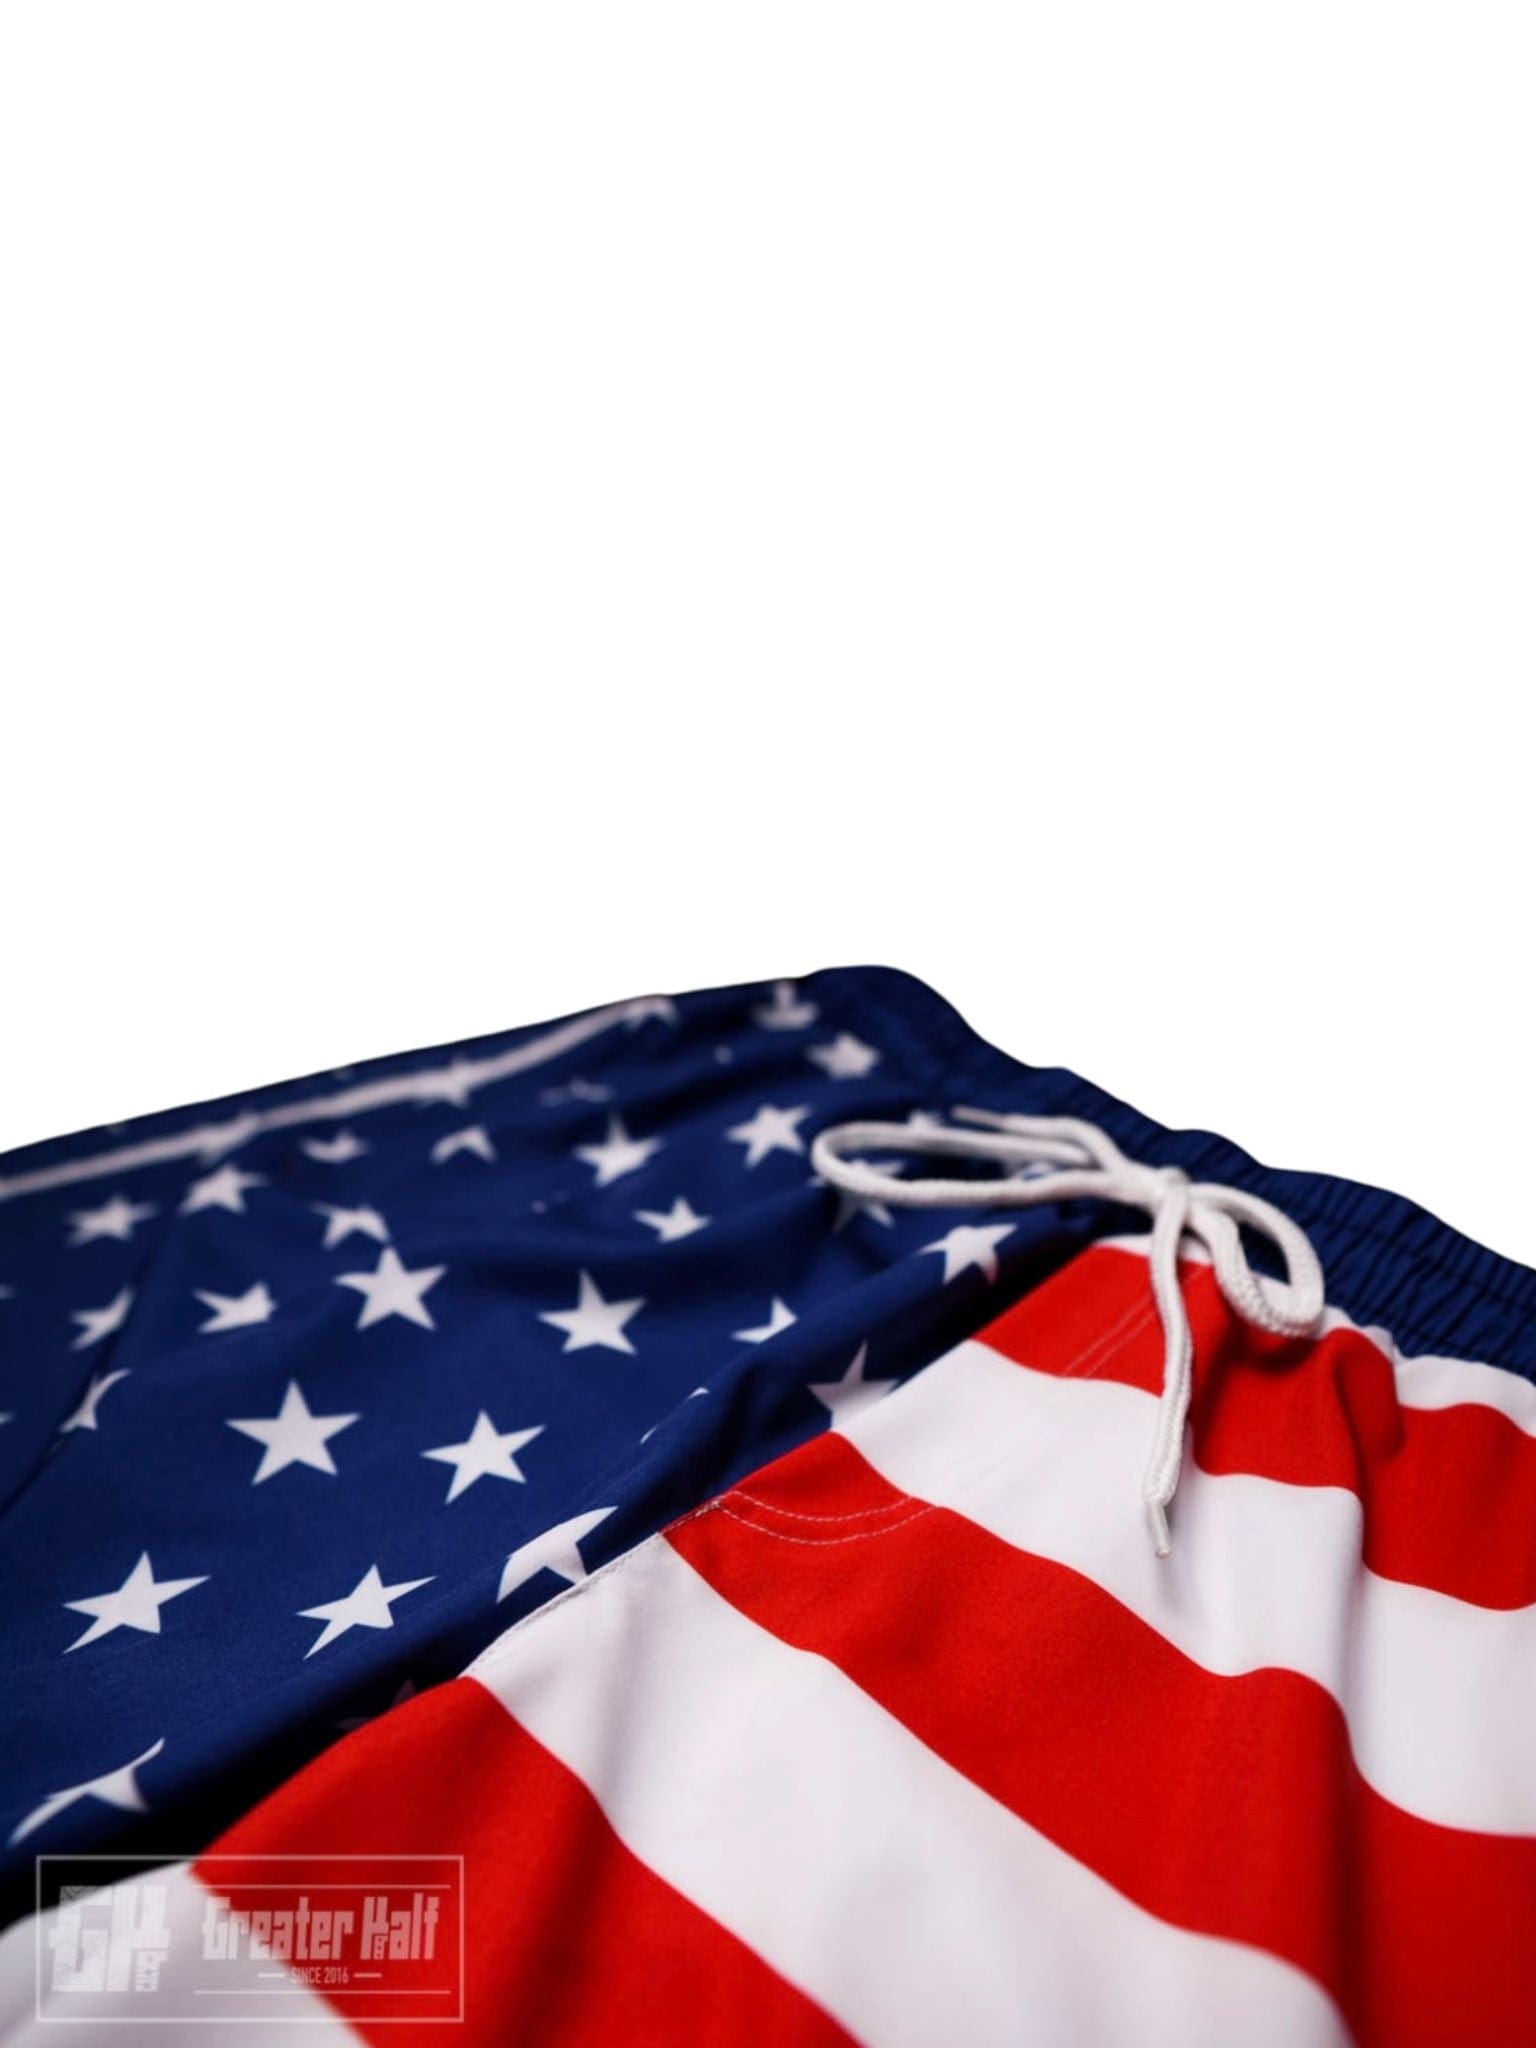 Thumbnail for American Flag Swim Trunks - Greater Half